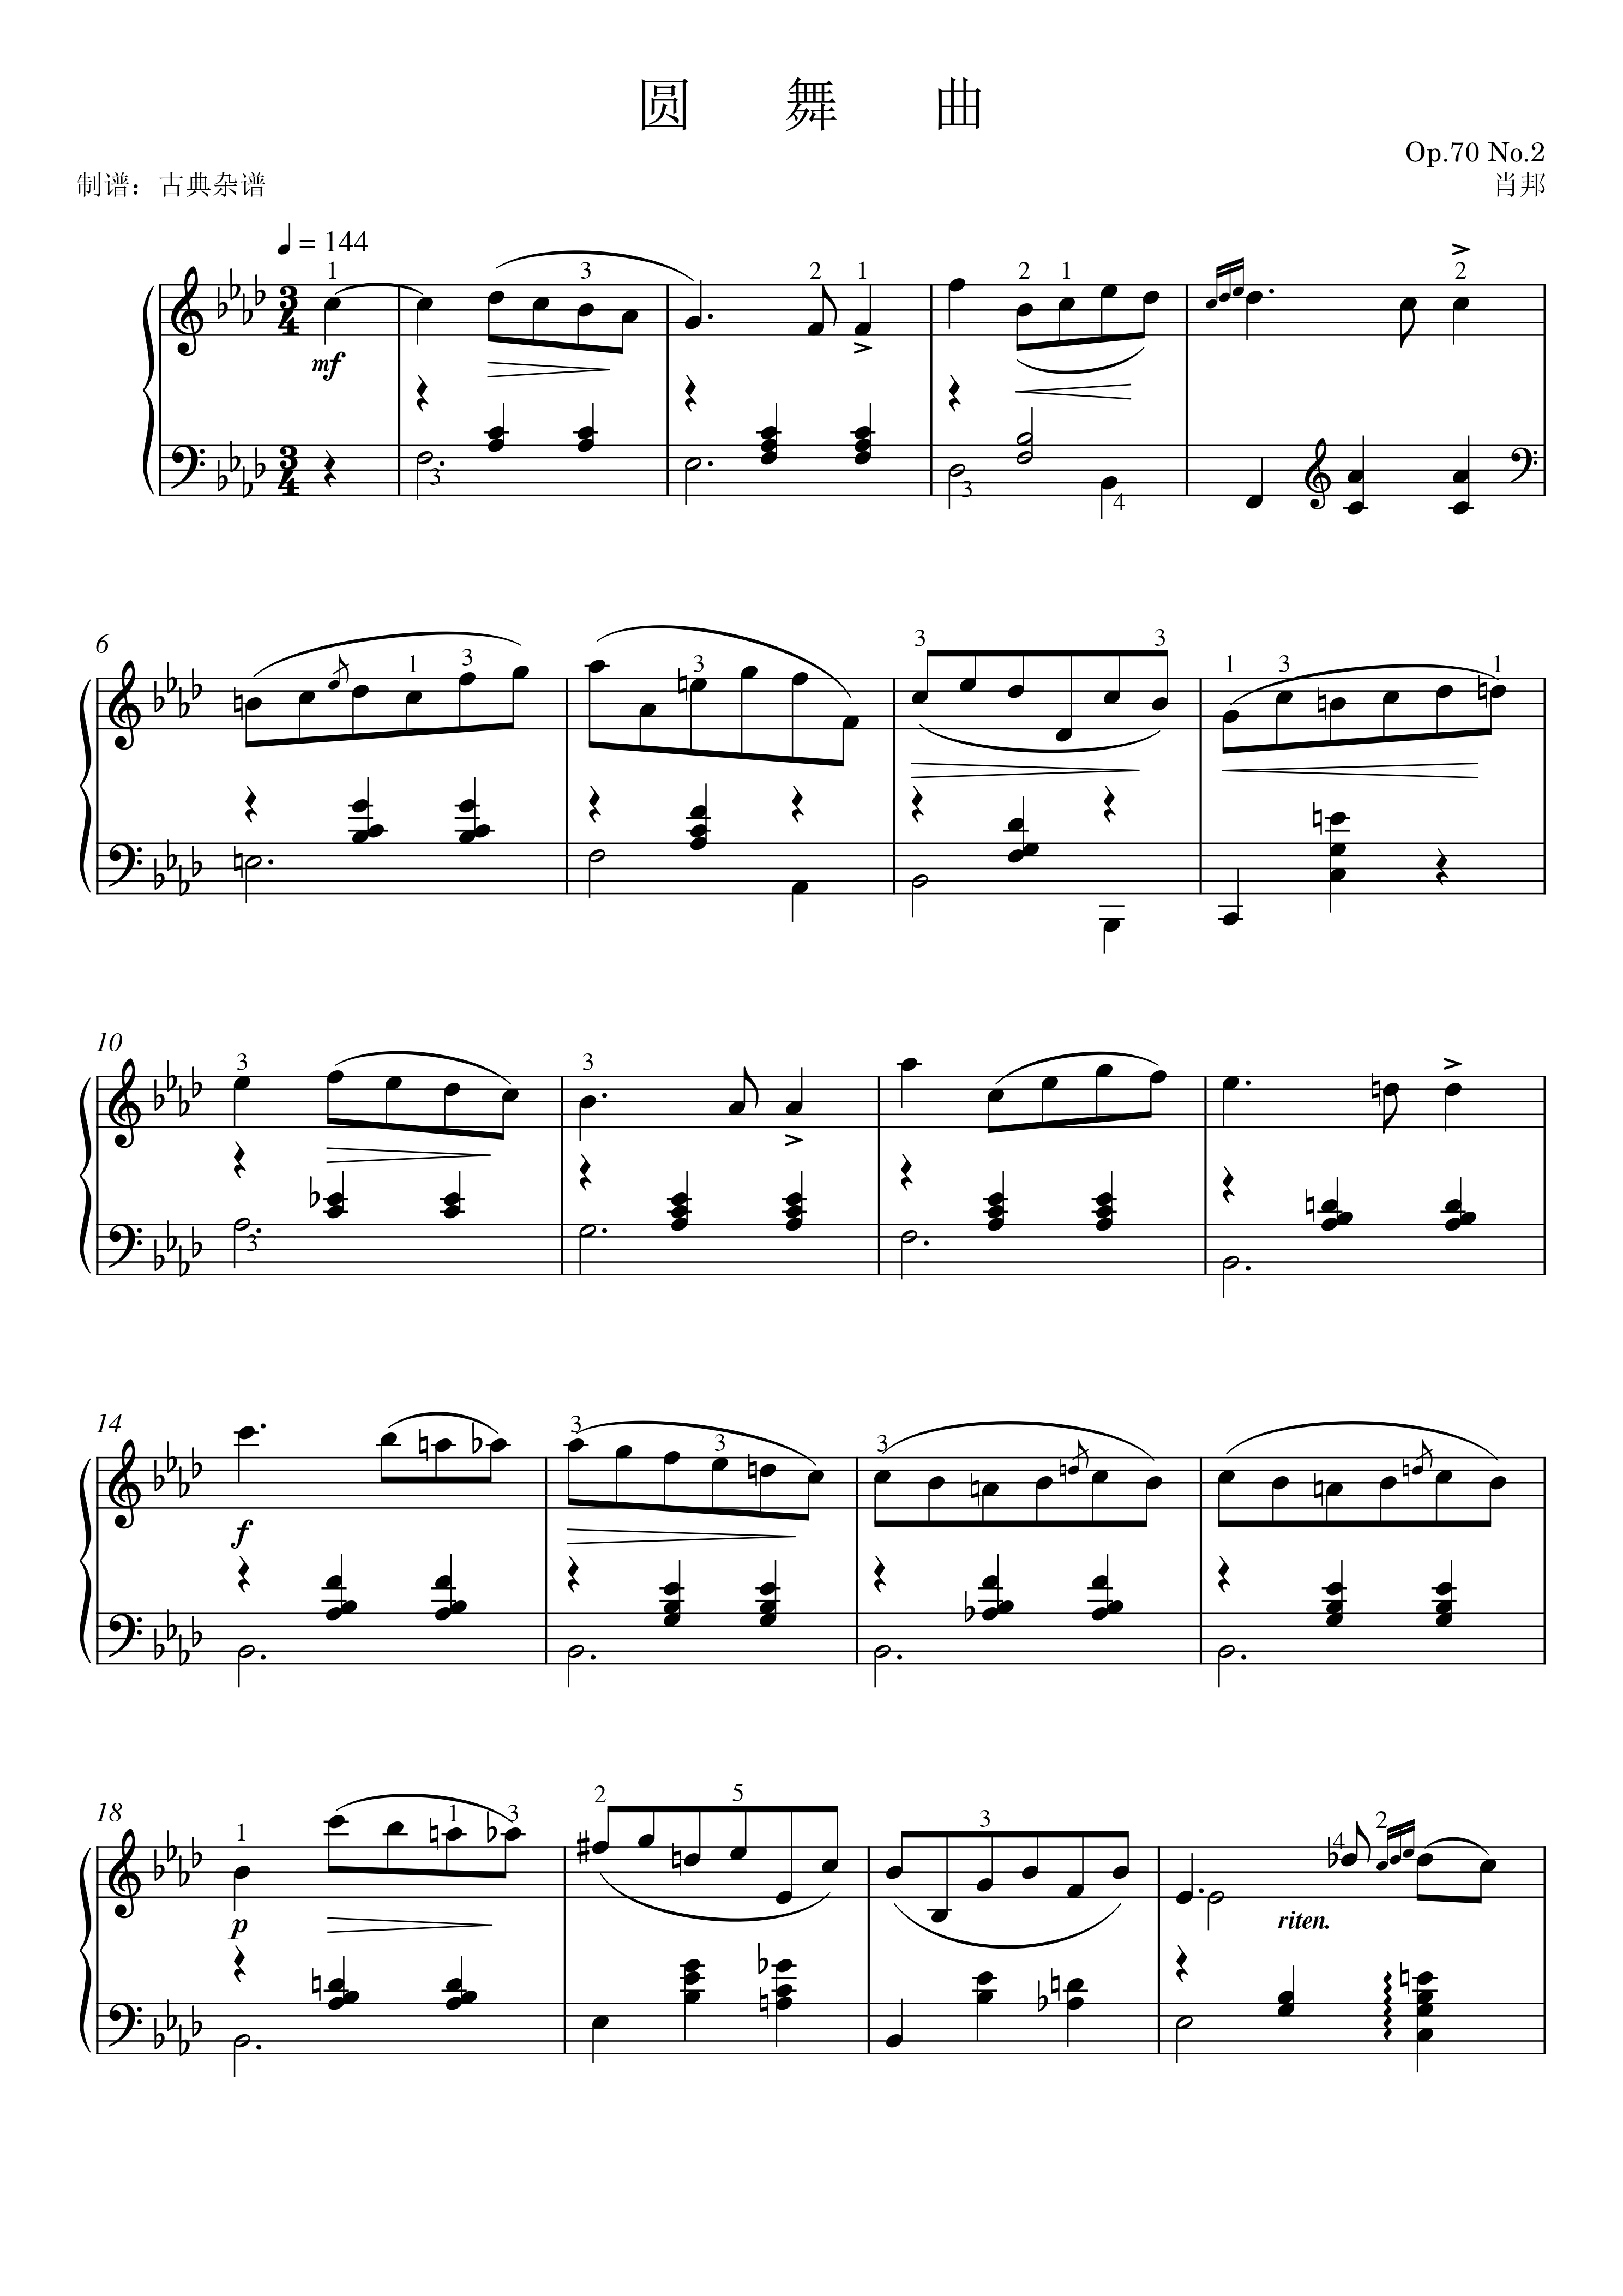 钢琴谱:圆舞曲 op70 no2,肖邦